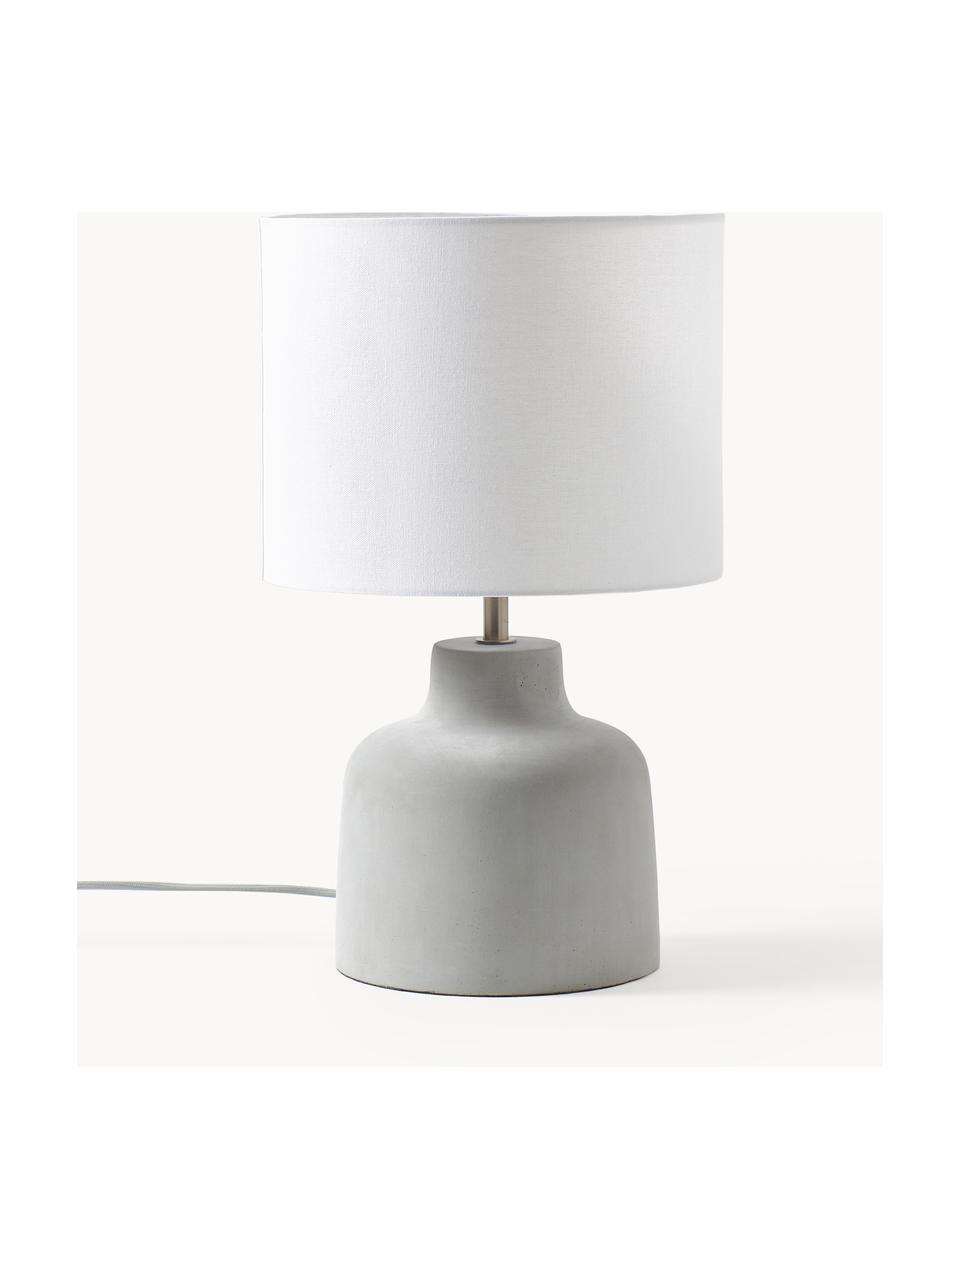 Handgemaakte tafellamp Ike betonnen voet, Lampenkap: 100% linnen, Lampvoet: beton, Grijs, wit, Ø 30 x H 45 cm